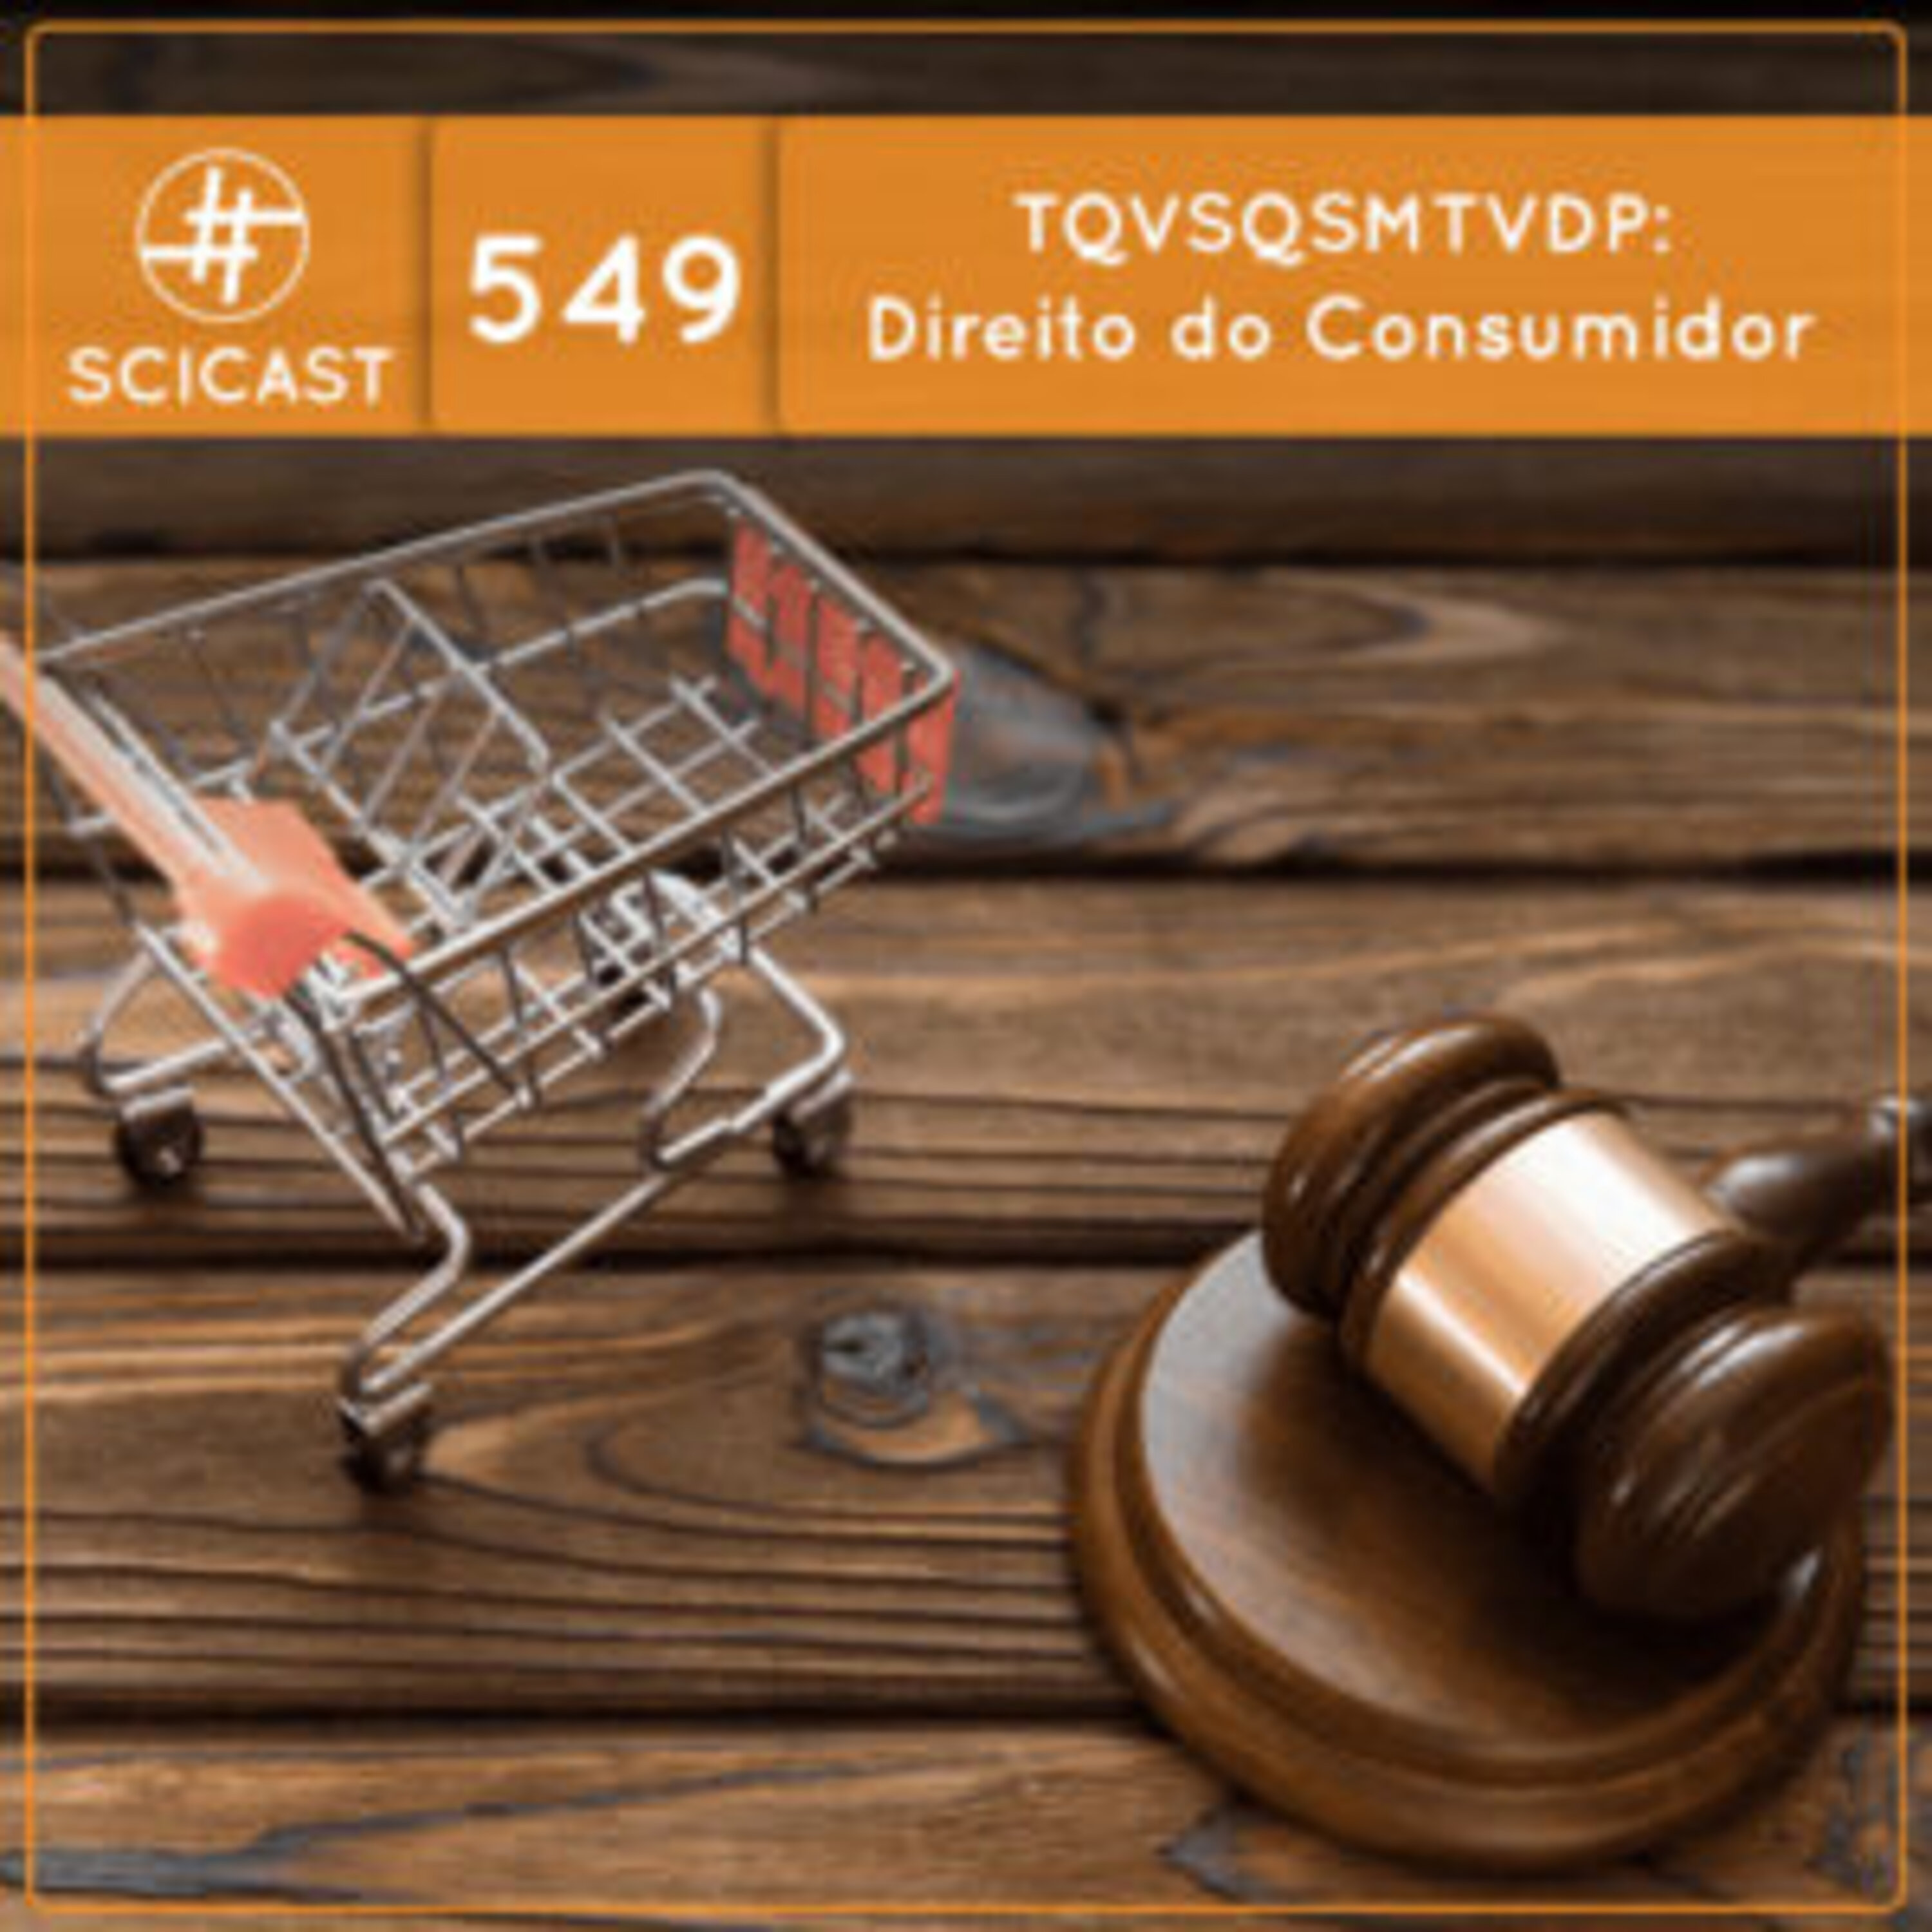 TQVSQSMTVDP: Direito do Consumidor (SciCast #549)